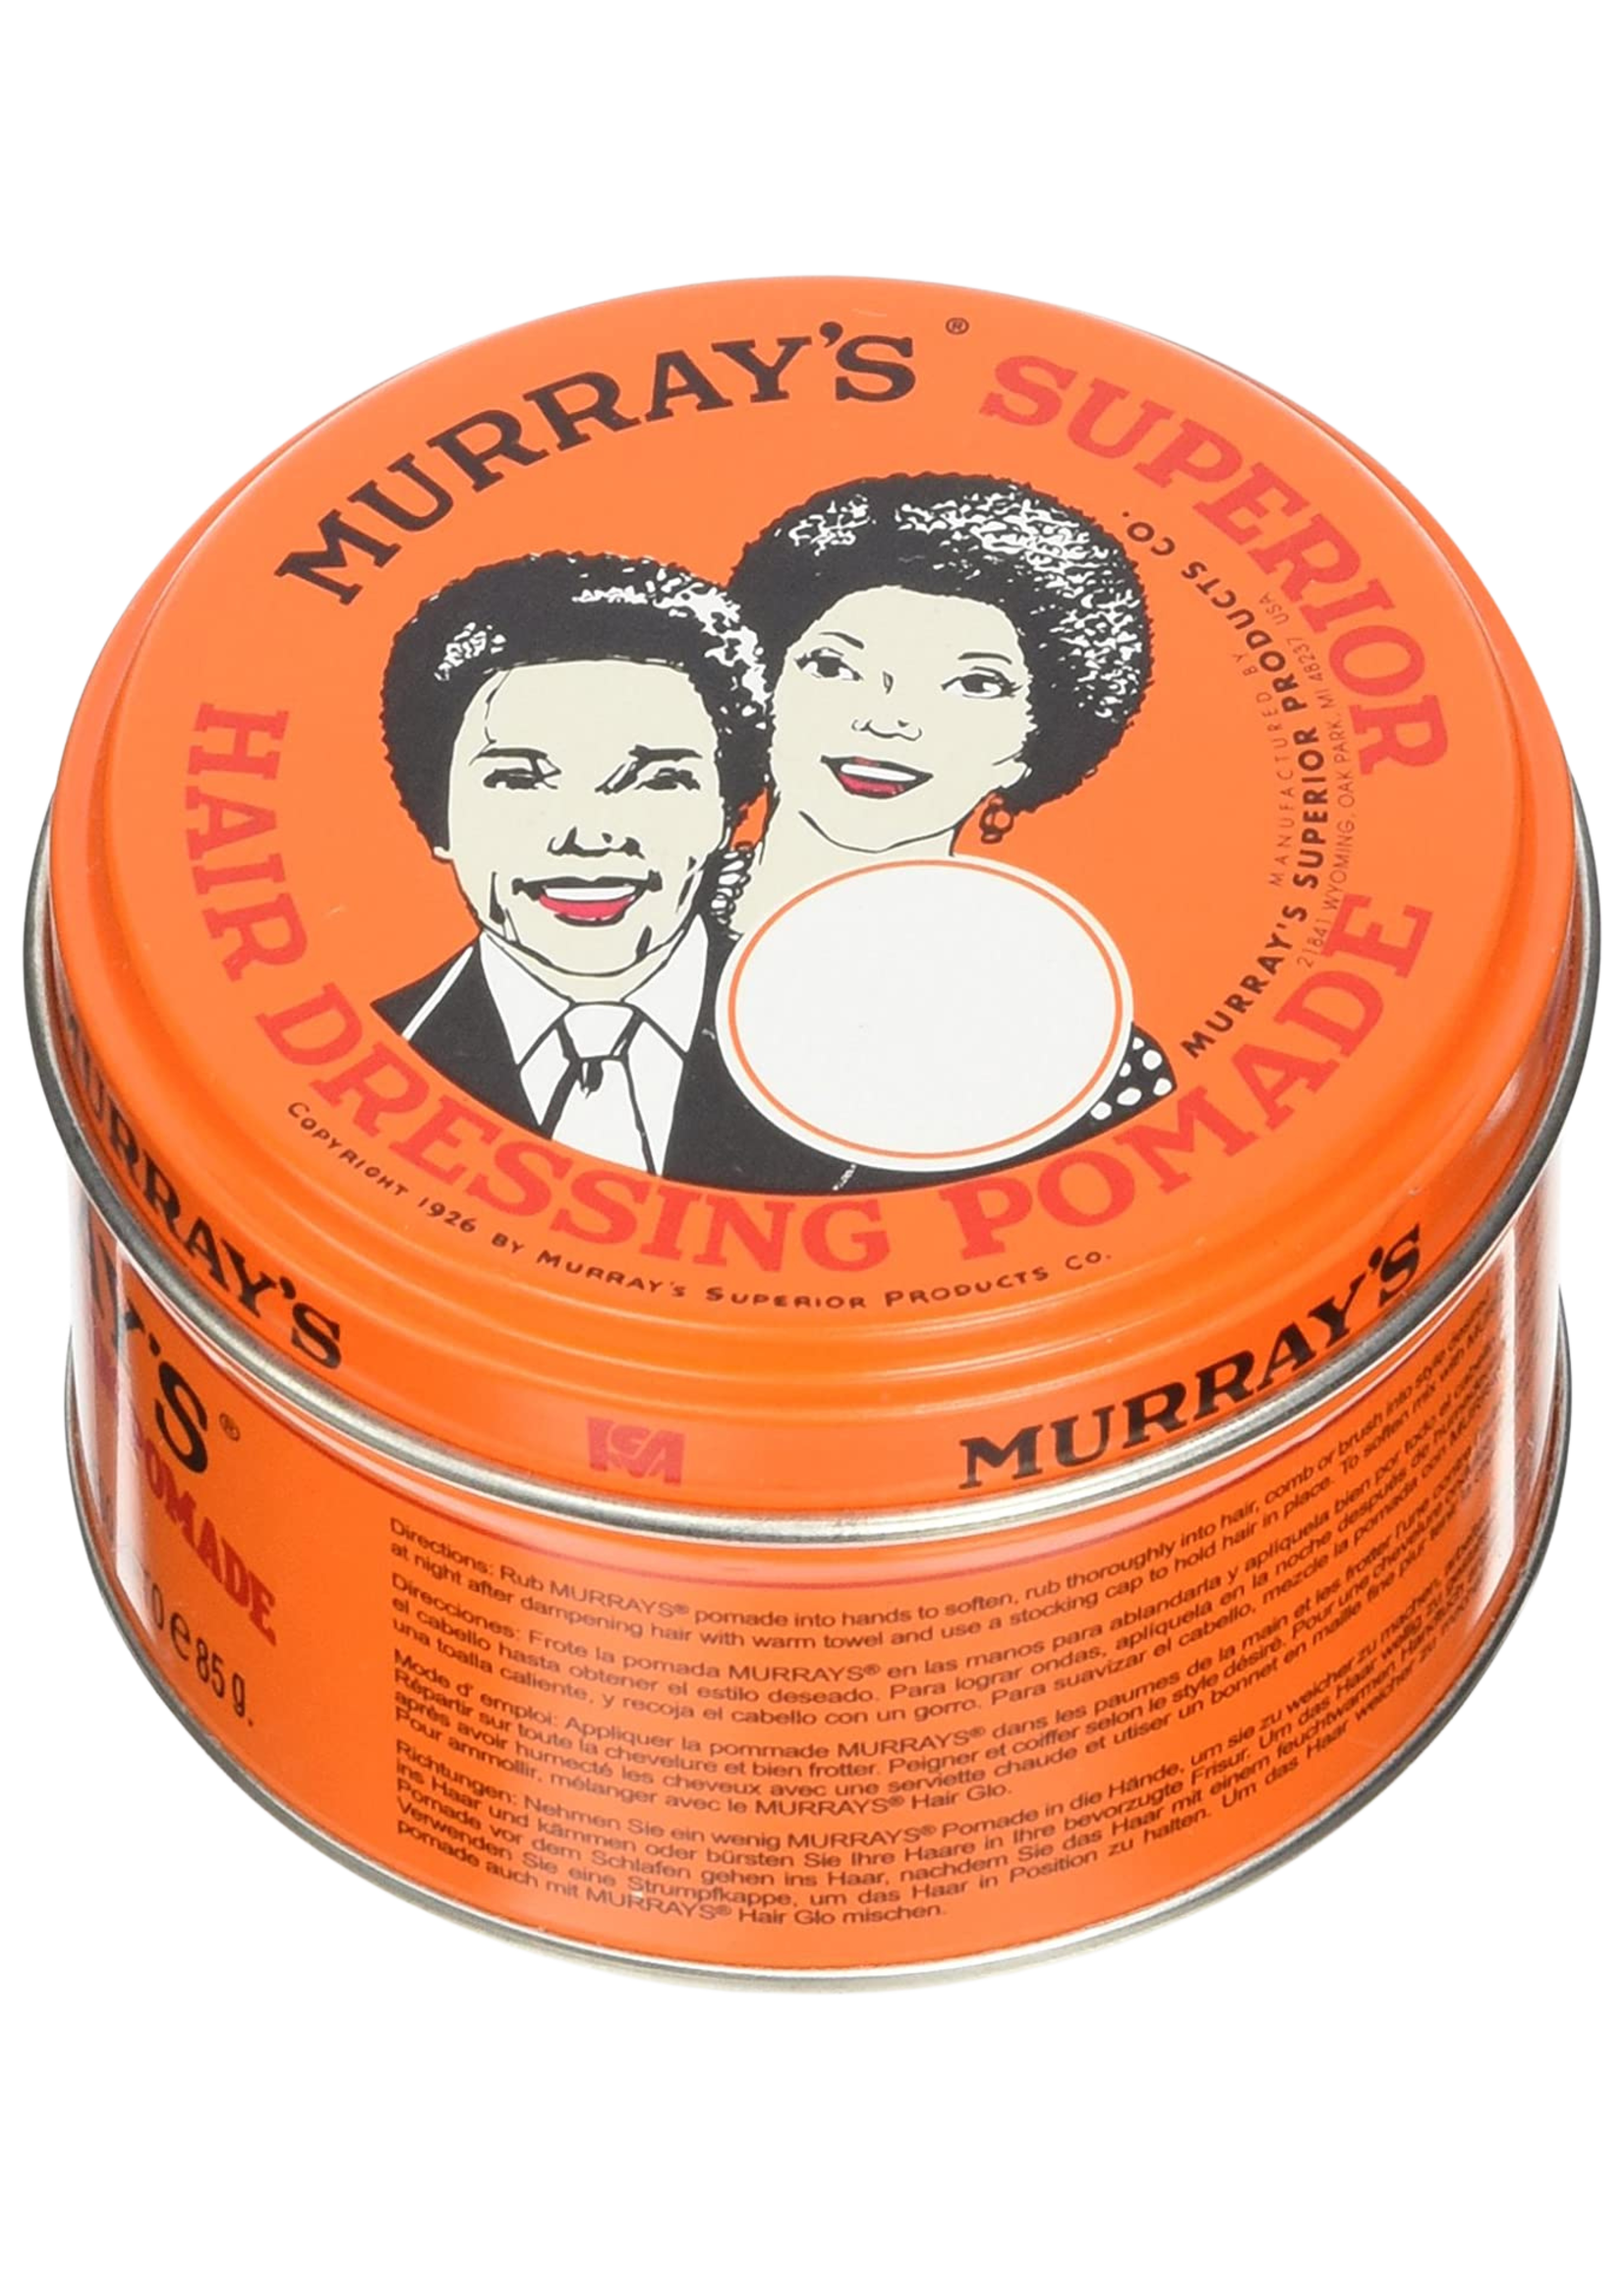 Murrays Superior Pomade 85g